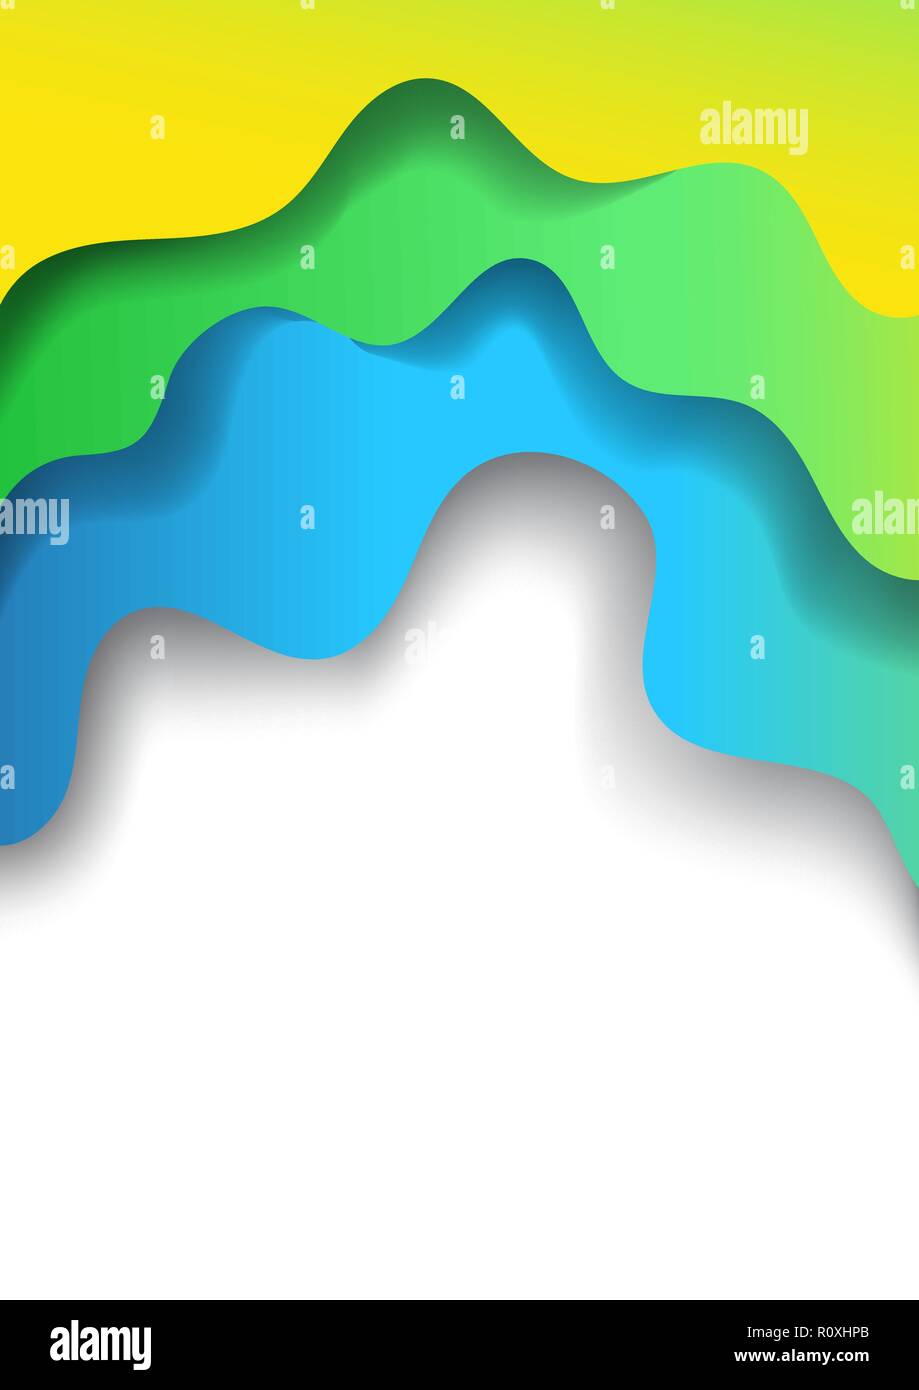 Verticale A4 banner con 3D astratto con sfondo blu verde carta onde di taglio. I colori del mare. Vettore di progettazione del layout per presentazioni, volantini e manifesti Illustrazione Vettoriale